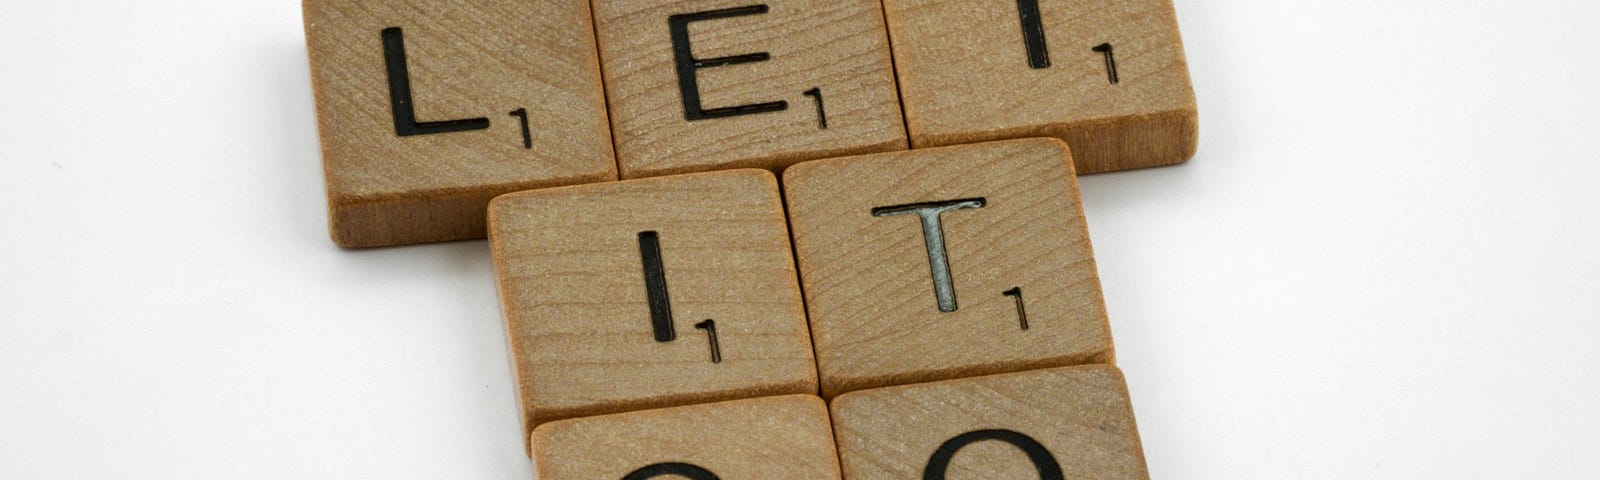 Scrabble tiles spelling Let It Go